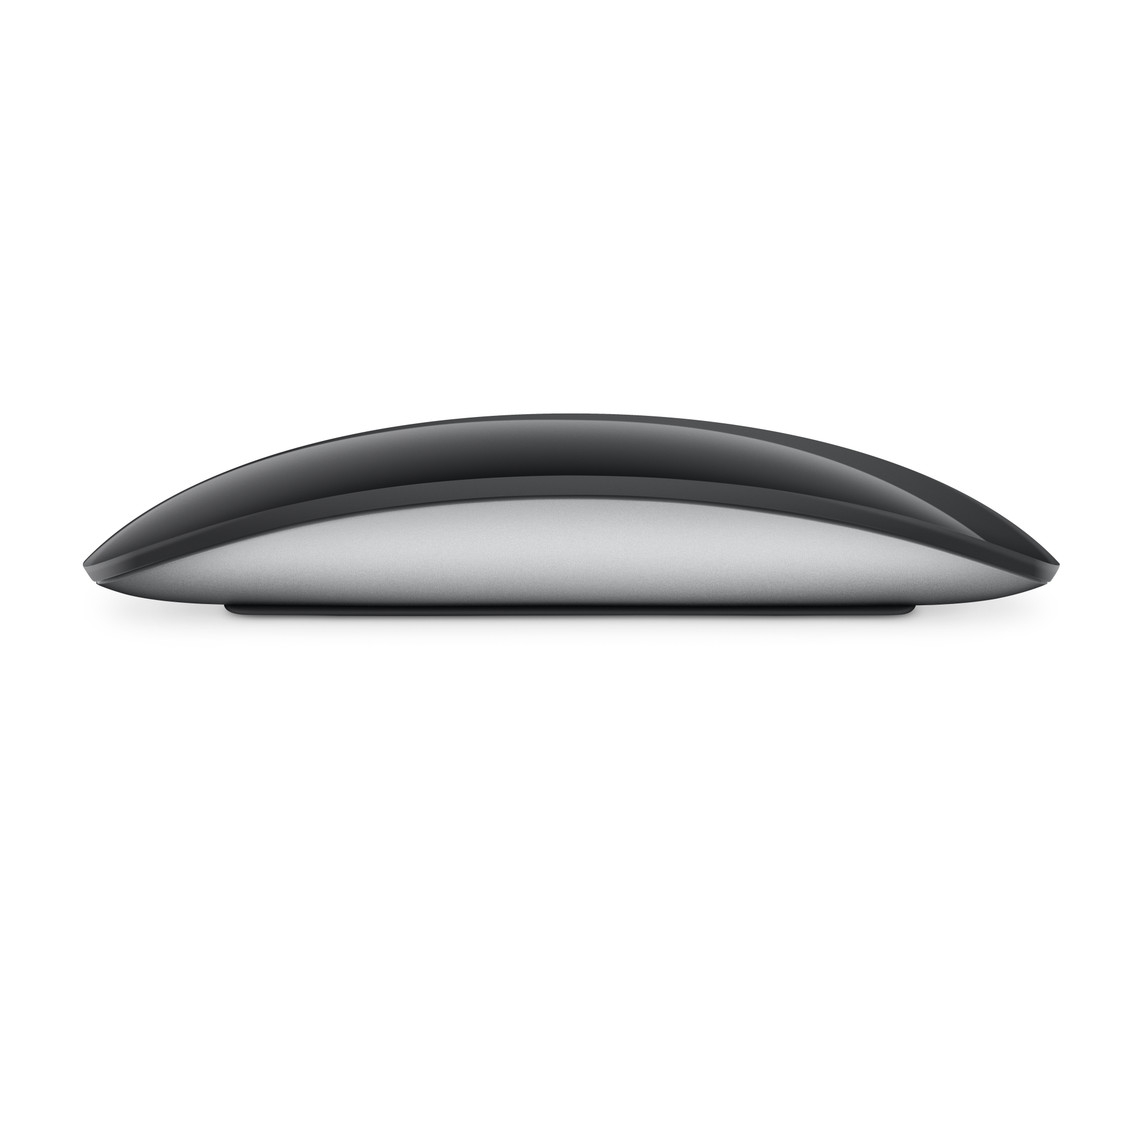 Мышь беспроводная Apple Magic Mouse - Black Multi-Touch Surface - фото 2